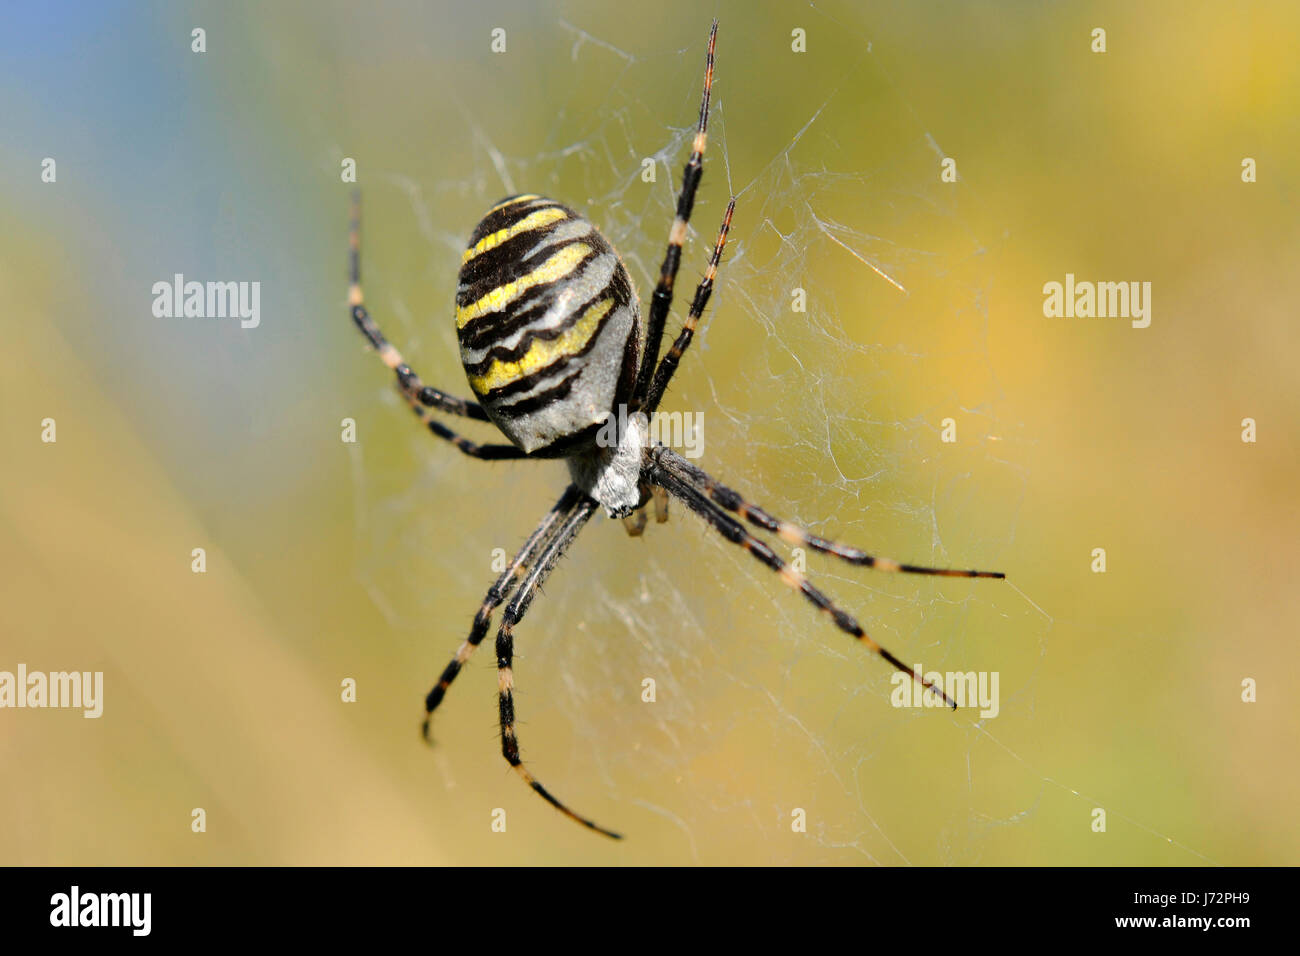 Spider danger toxique non toxique de la faune nature toxique danger aliment alimentaire jambes Banque D'Images